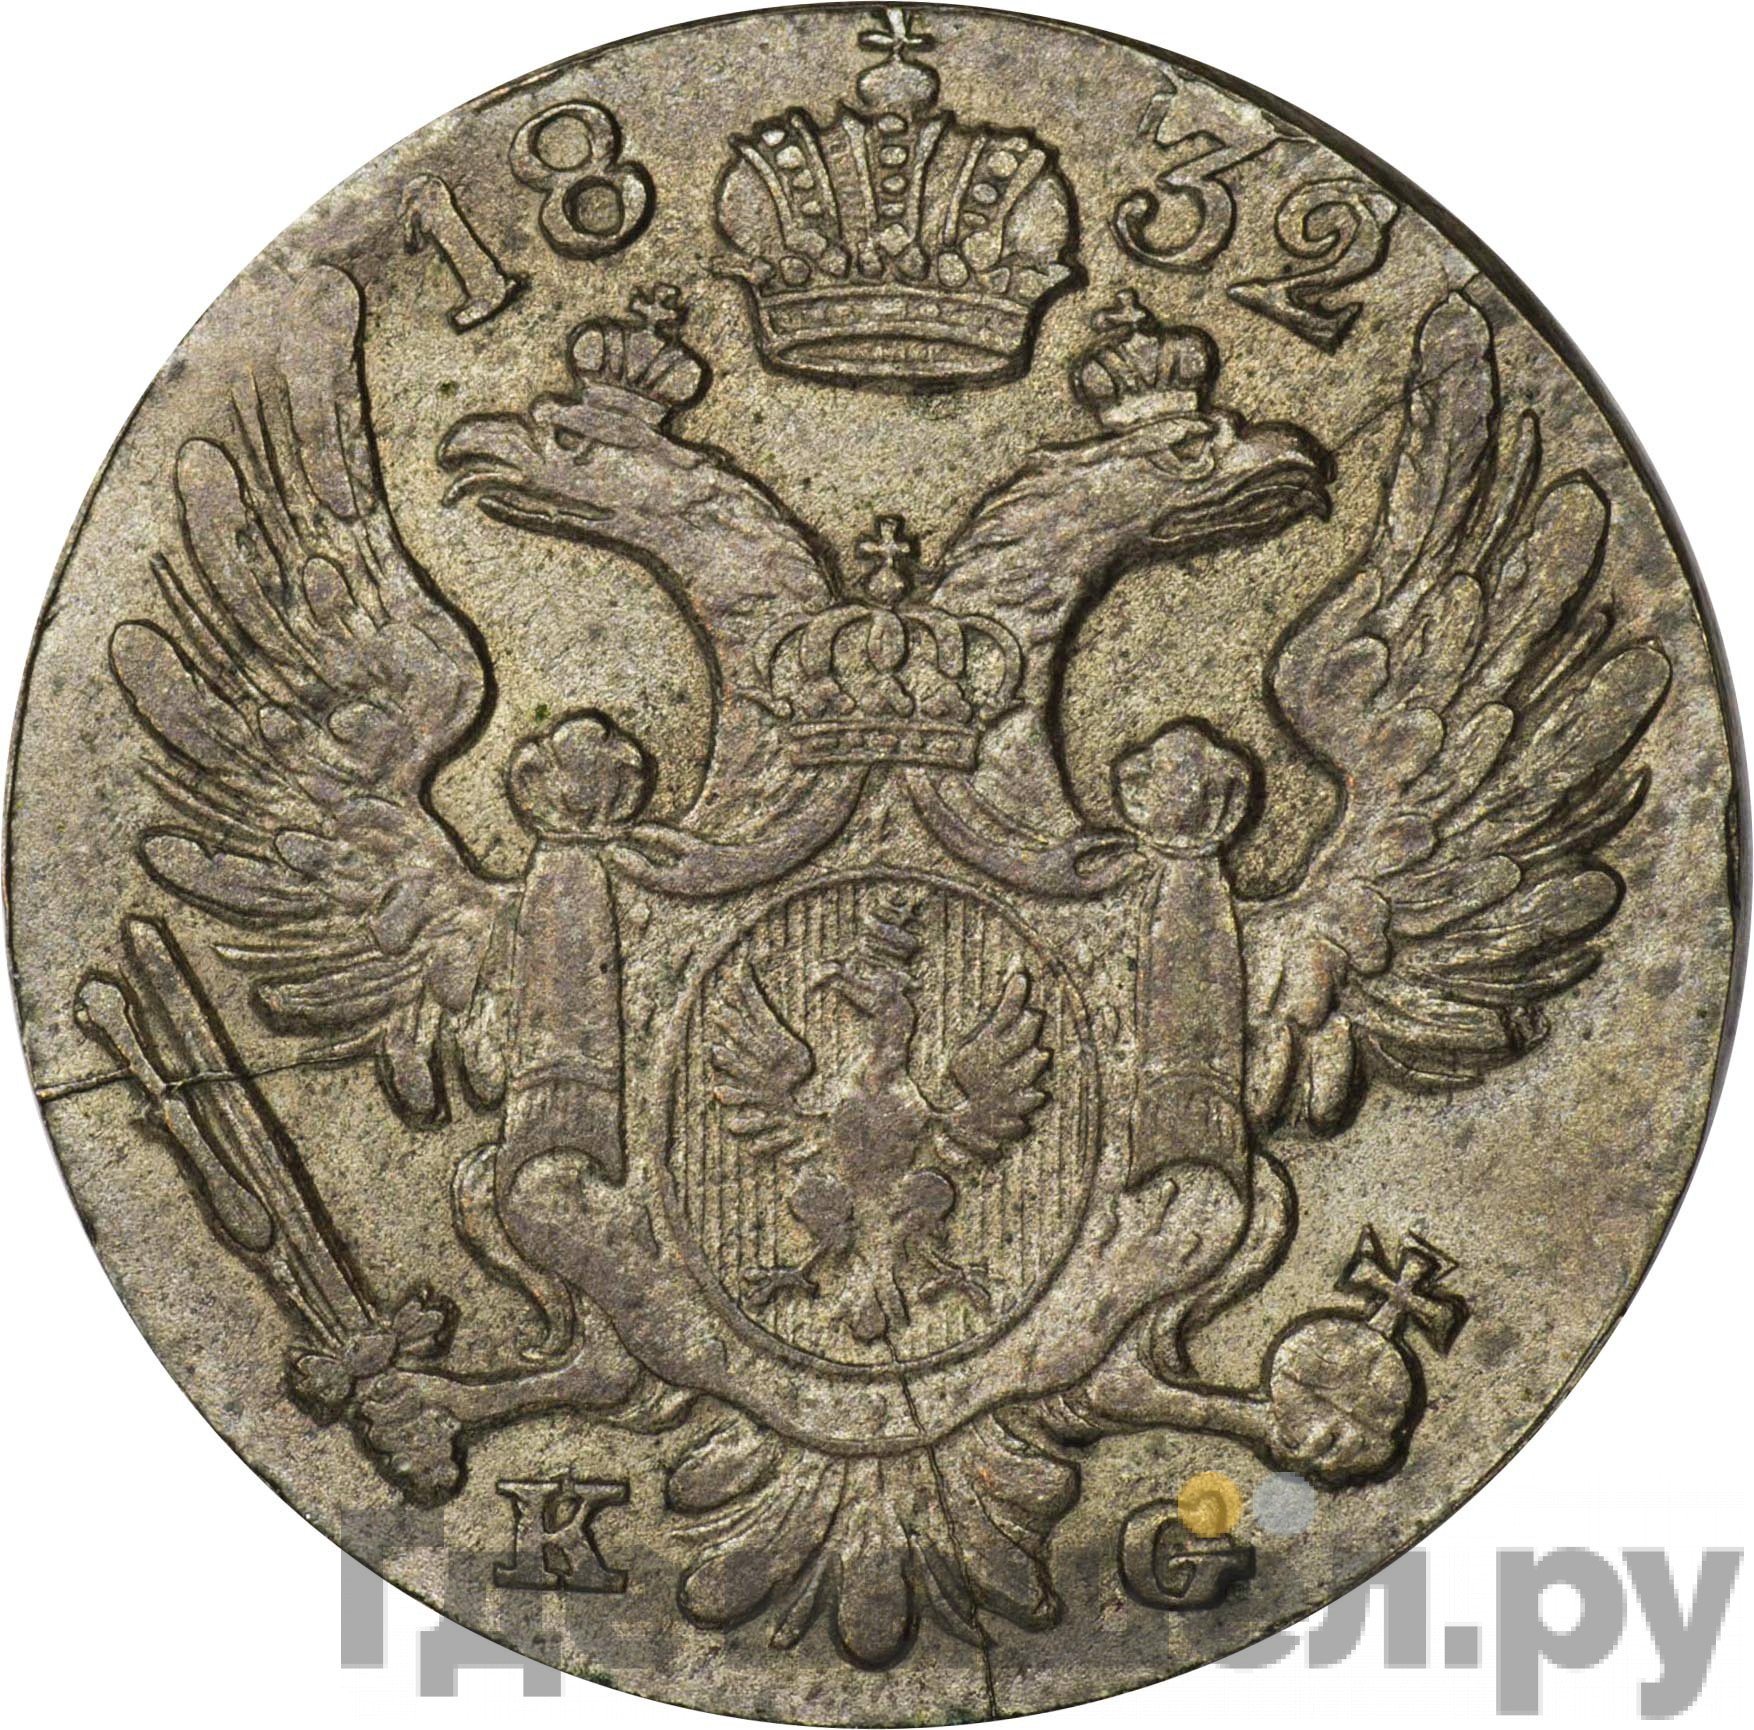 10 грошей 1832 года KG Для Польши Новодел 